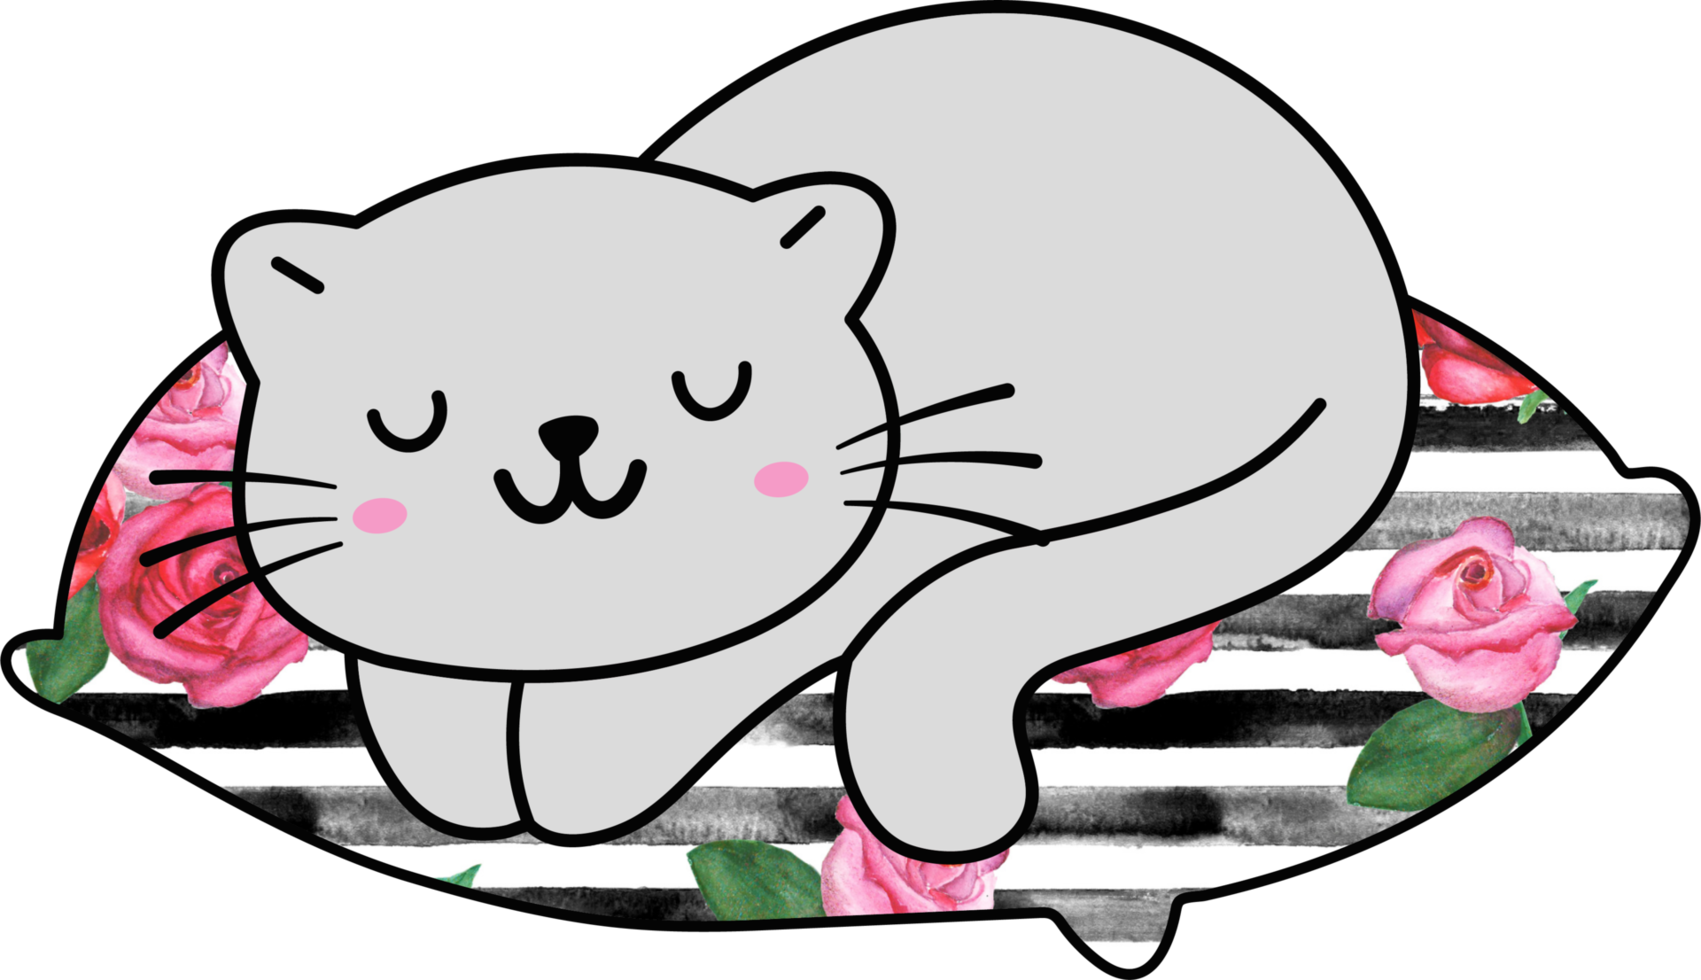 lindo gato durmiendo en una almohada colorida personaje animal de dibujos animados dibujados a mano. diseño de personajes de dibujos animados png